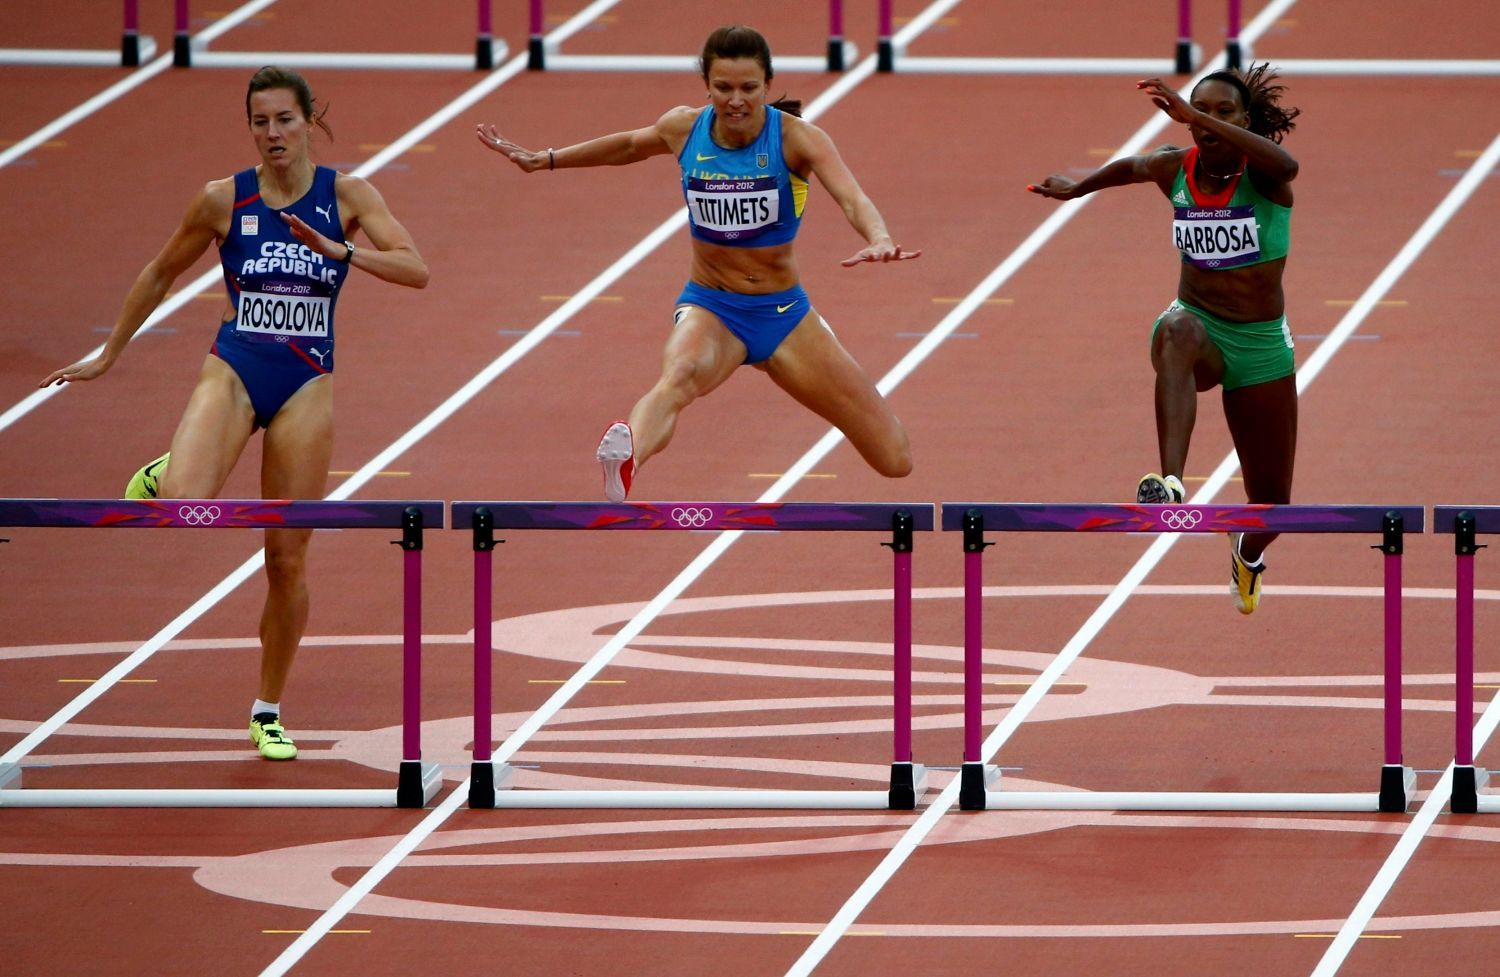 Финал легкой атлетики. Бег с барьерами на 400 м. Лондон 2012 бег с барьерами. Легкая атлетика 400 метров с барьерами. Техника бега на 400 м с барьерами.